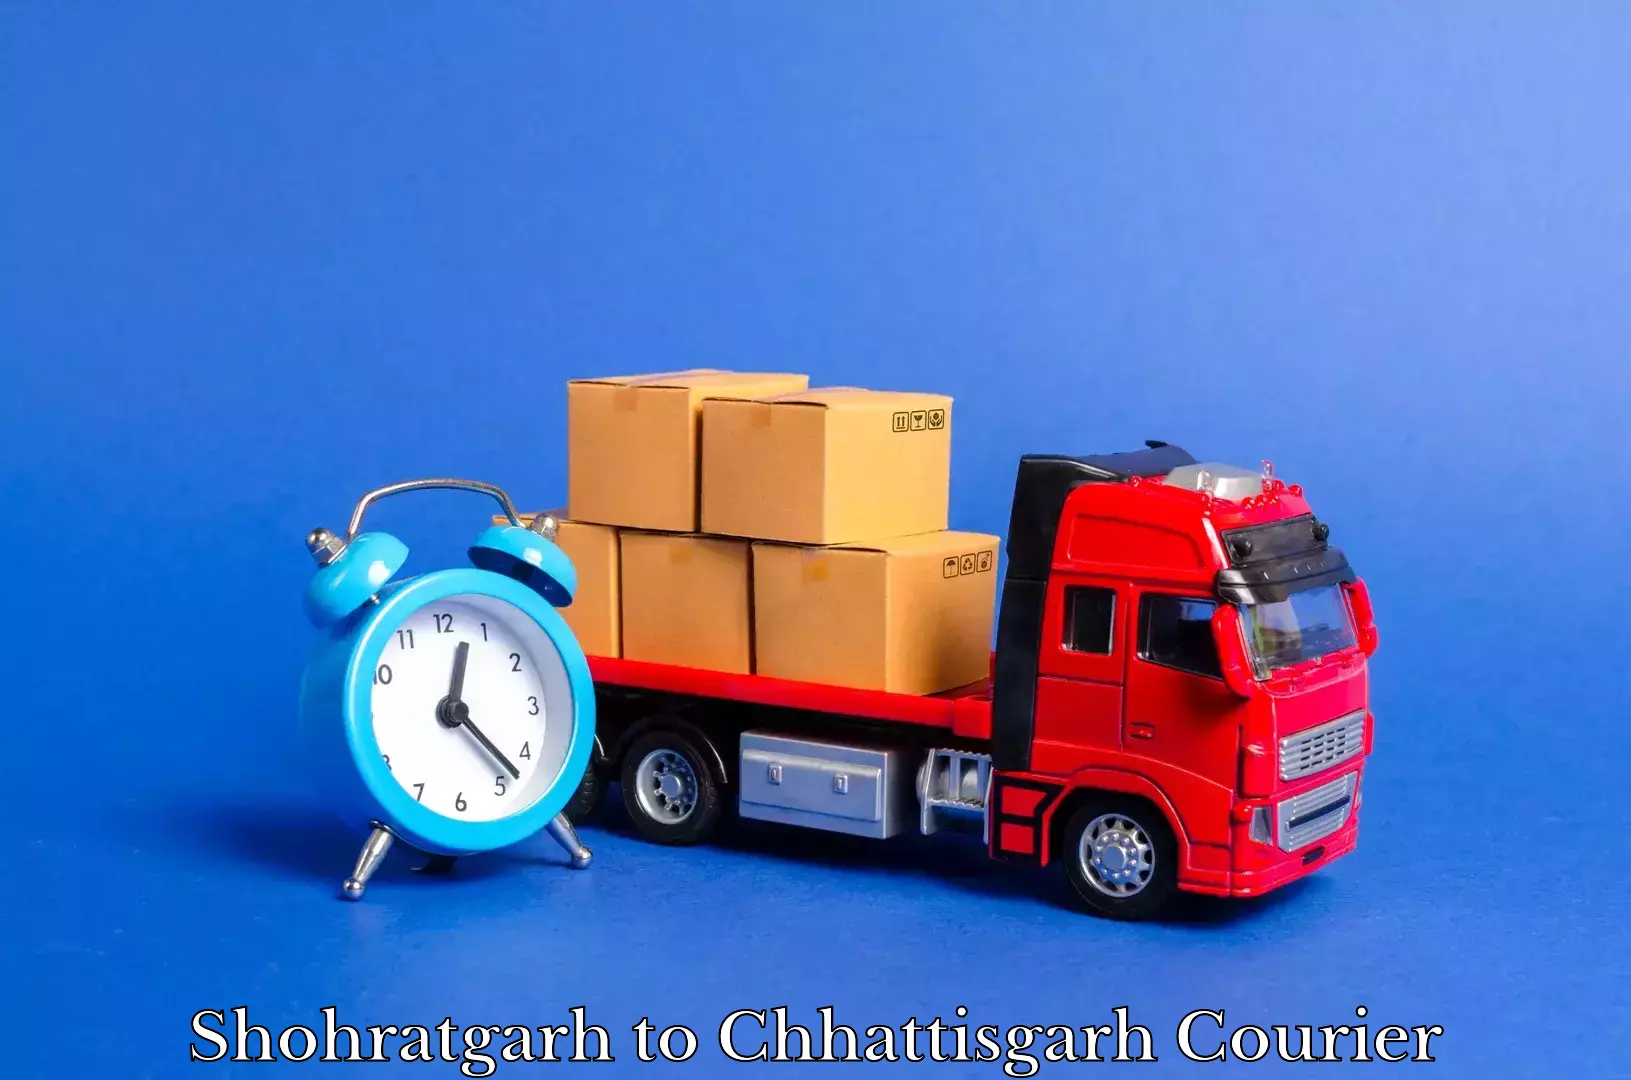 Professional furniture movers Shohratgarh to Chhattisgarh